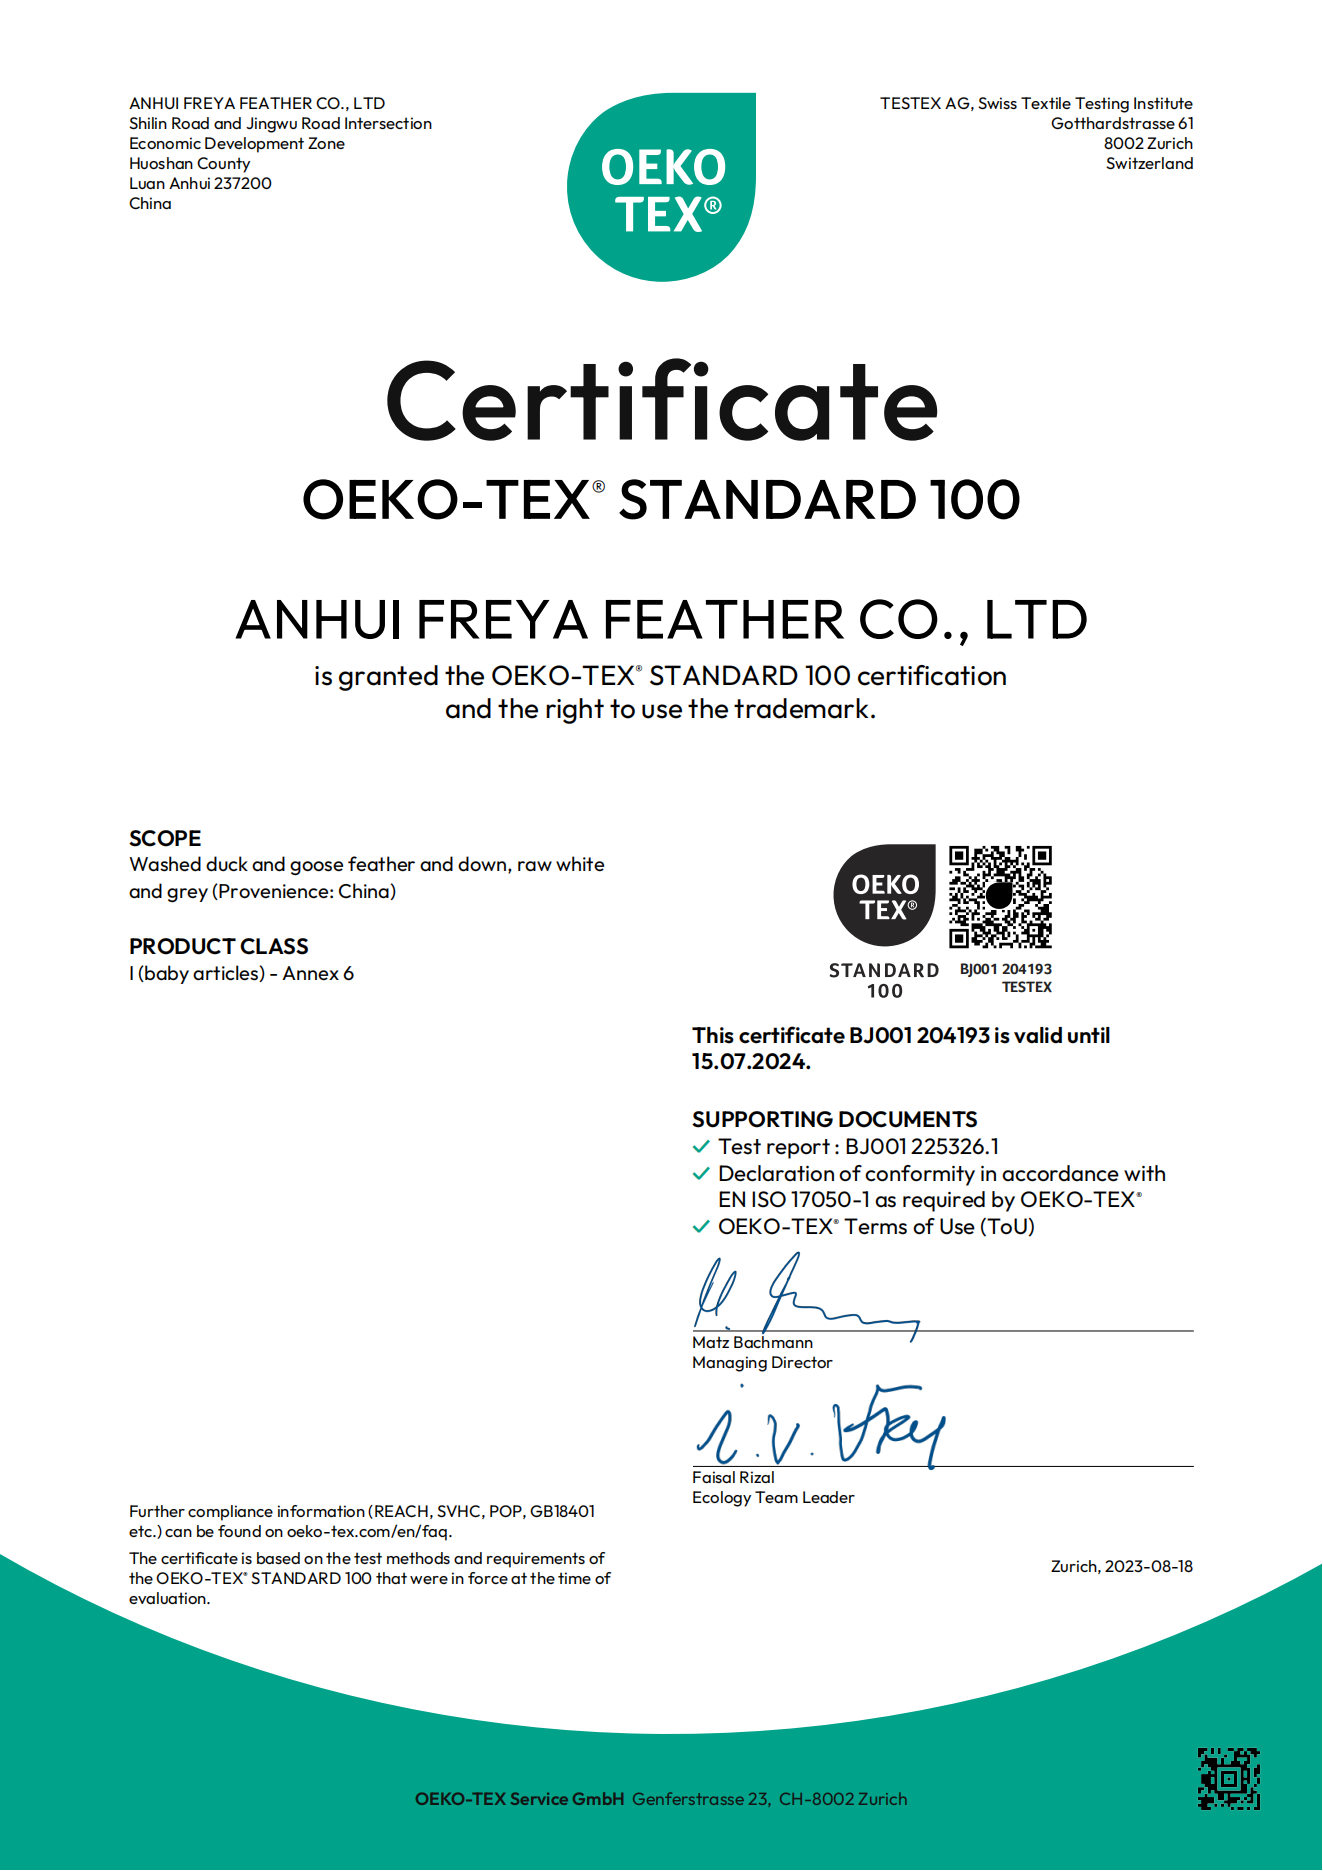 OEKO certificate